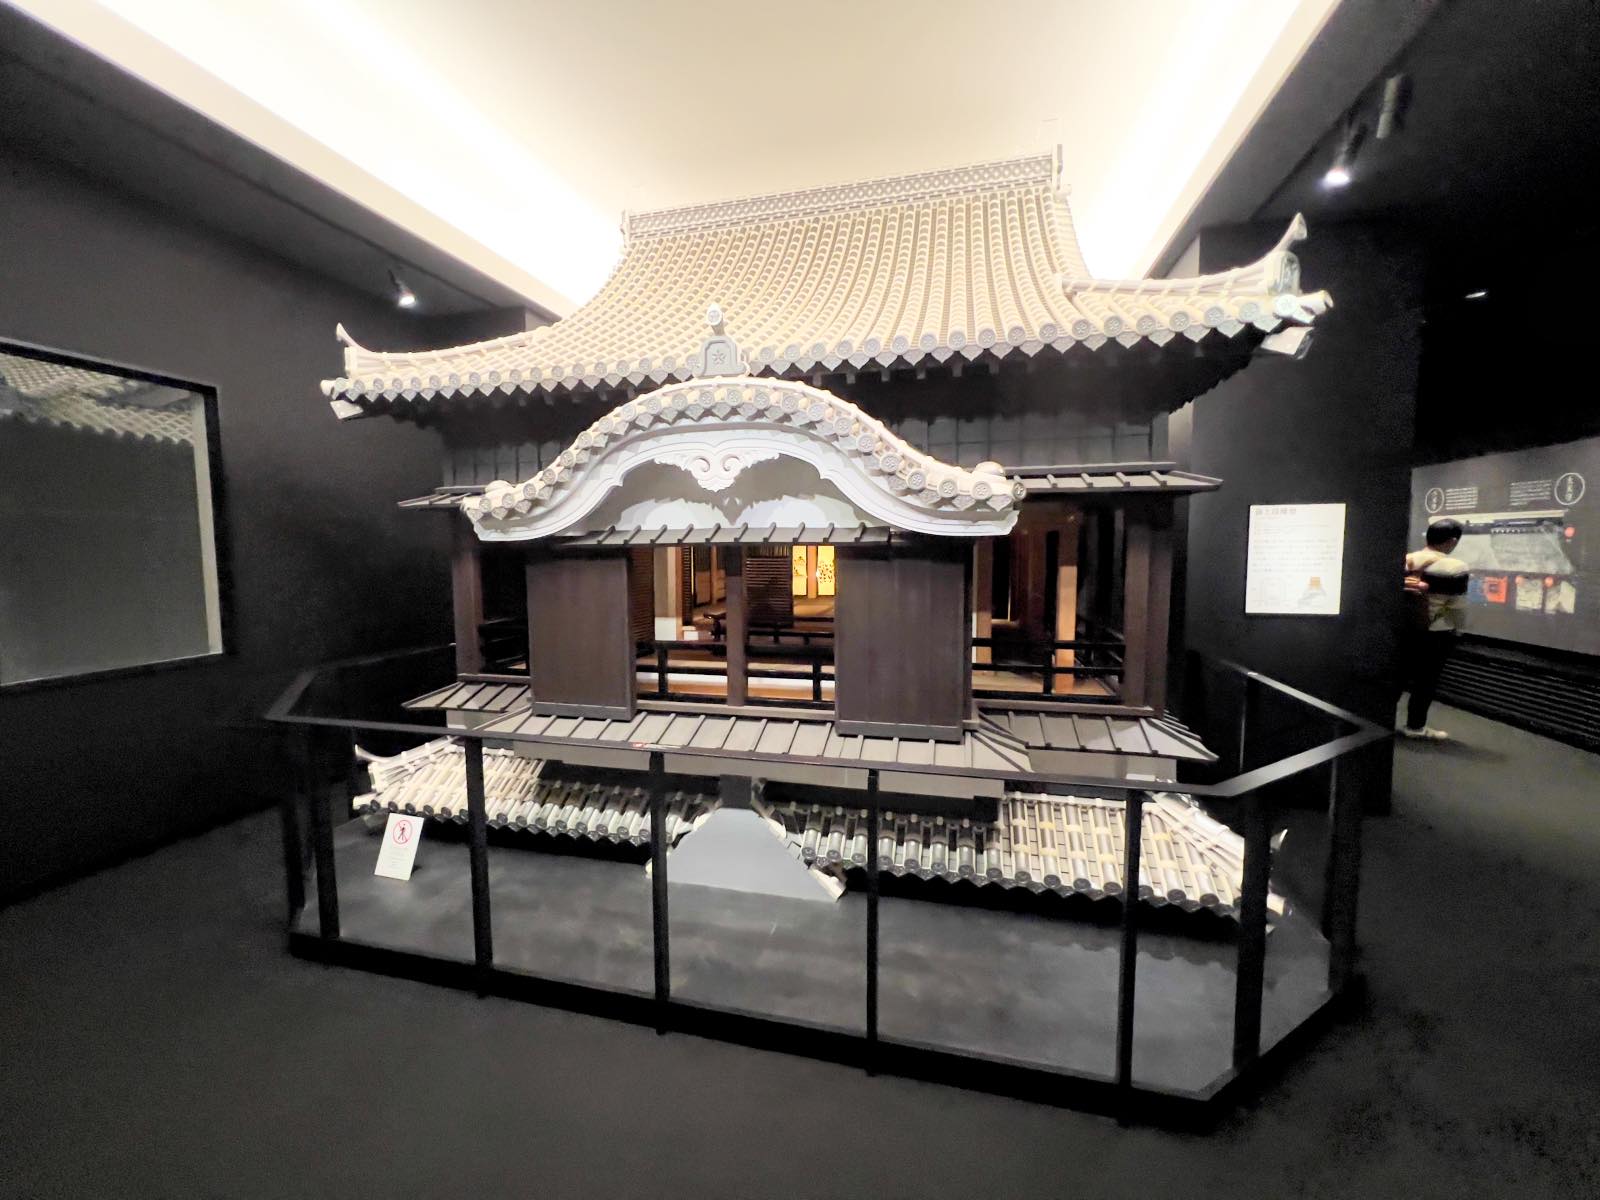 熊本城 天守閣の模型